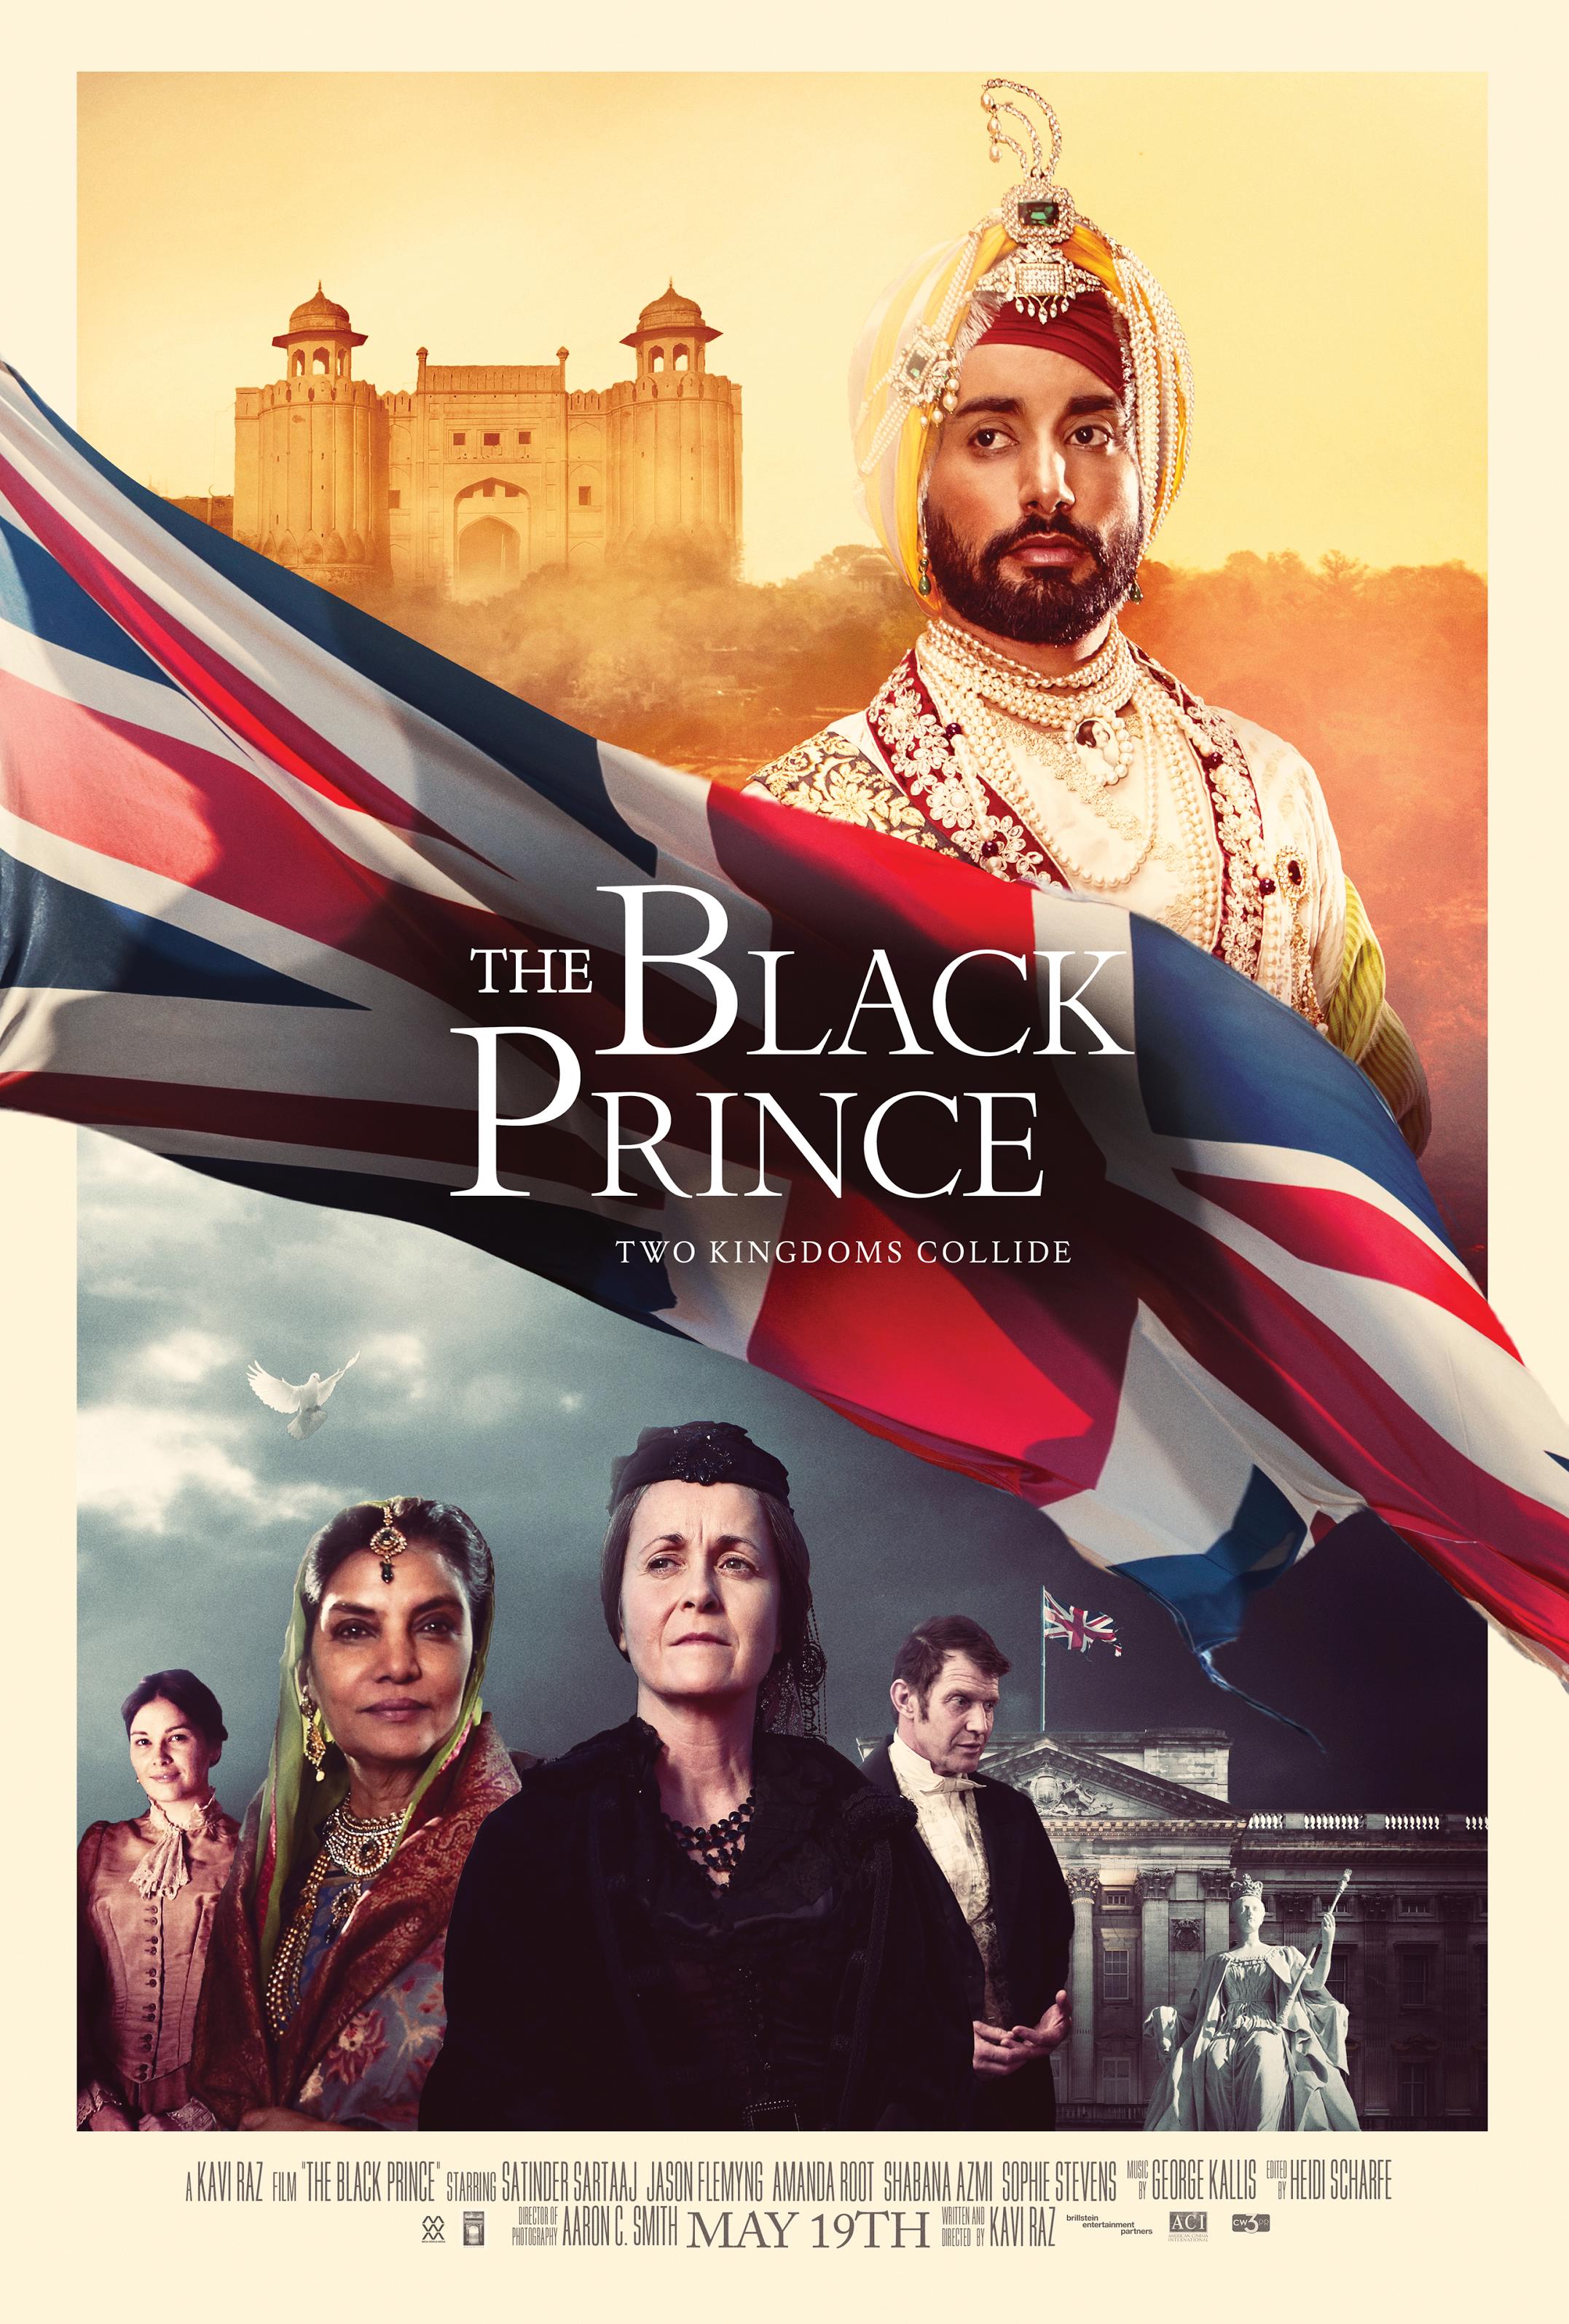 Nonton film The Black Prince layarkaca21 indoxx1 ganool online streaming terbaru